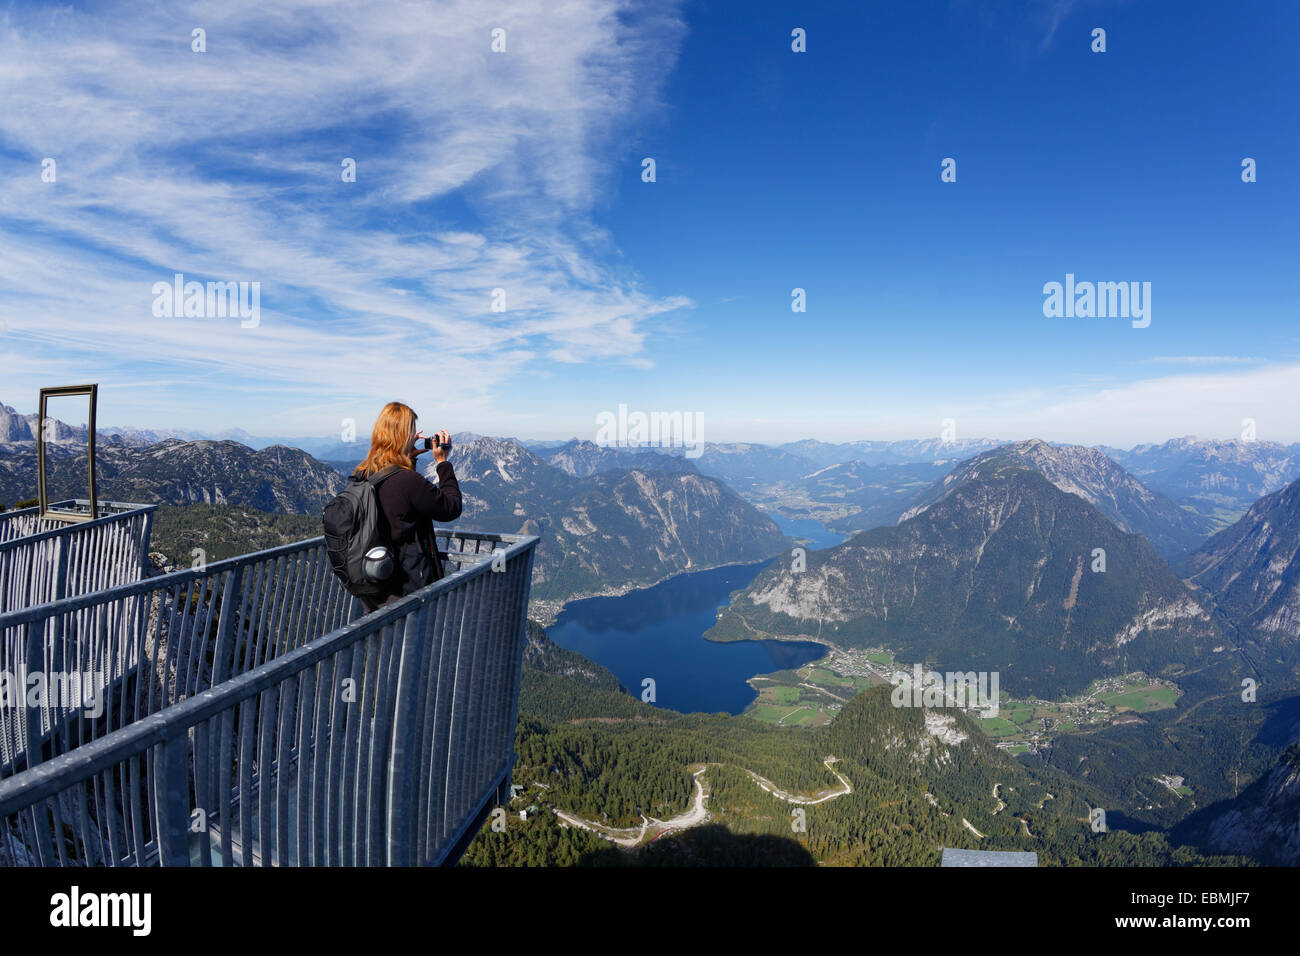 Cinq doigts plate-forme d'observation de la montagnes de Dachstein, Lac de Hallstatt et à Obertraun, Site du patrimoine mondial de l'UNESCO Banque D'Images